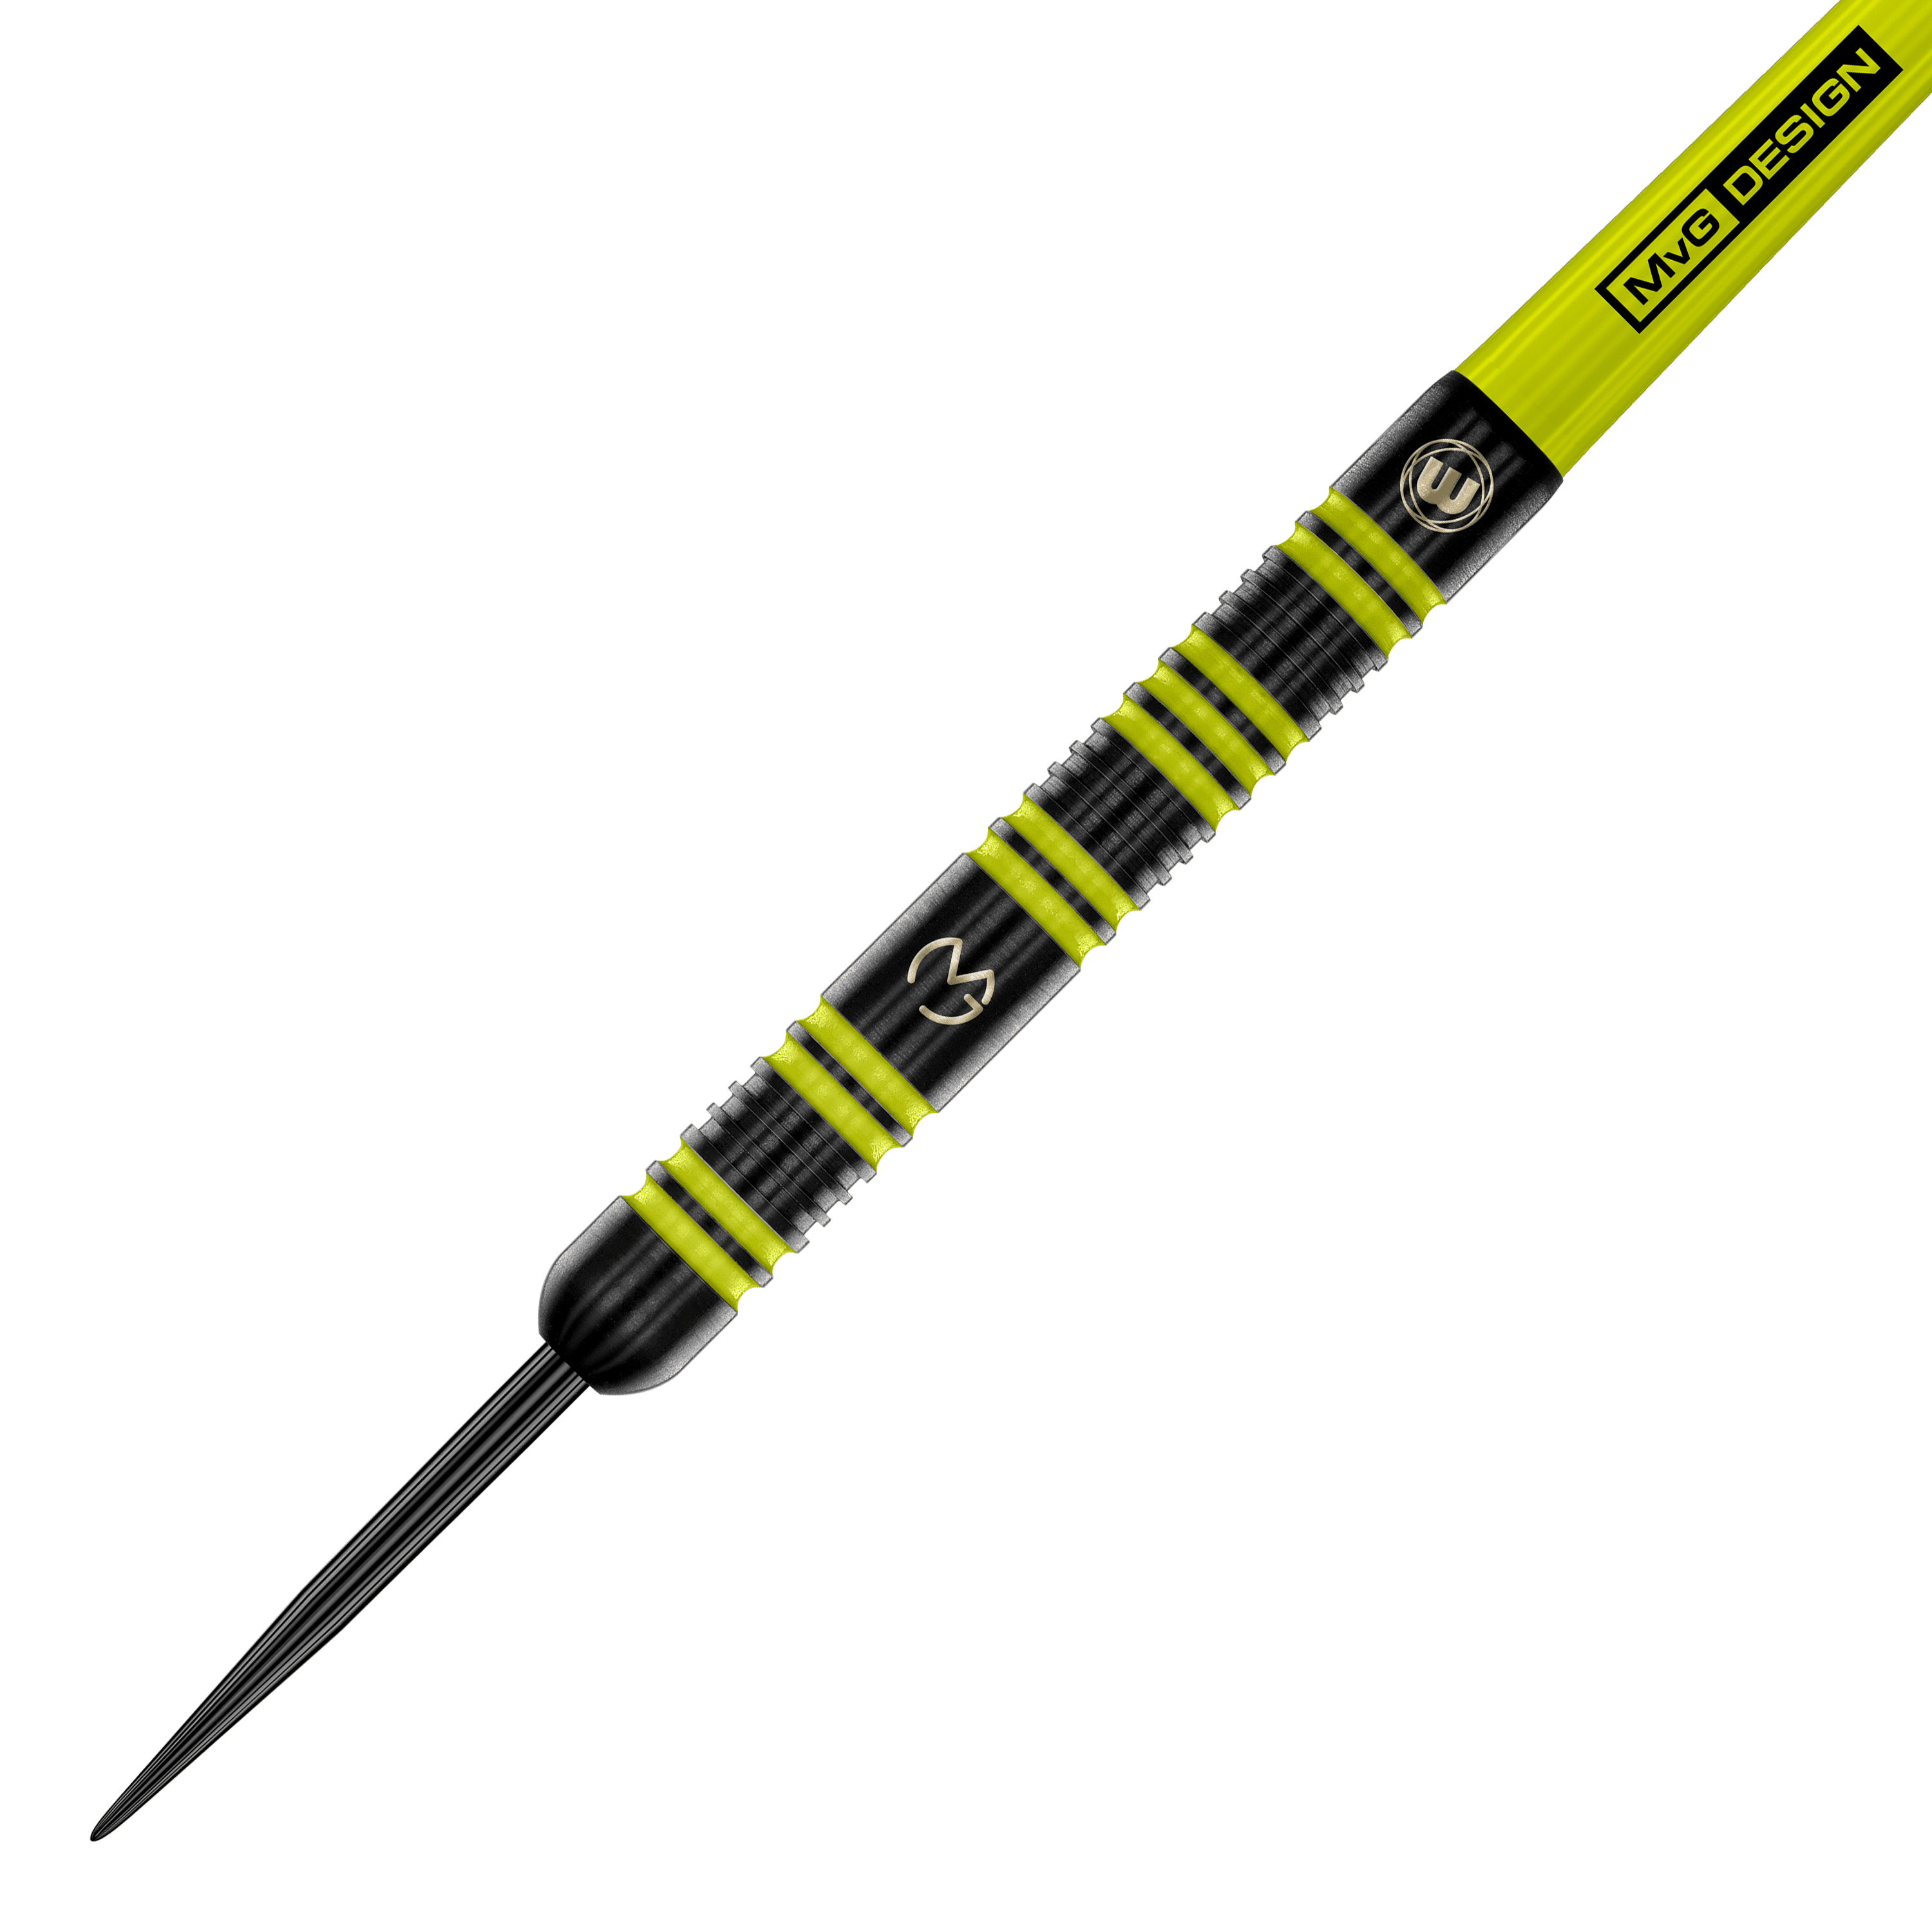 Winmau Michael Van Gerwen 85 Pro-Series steel darts